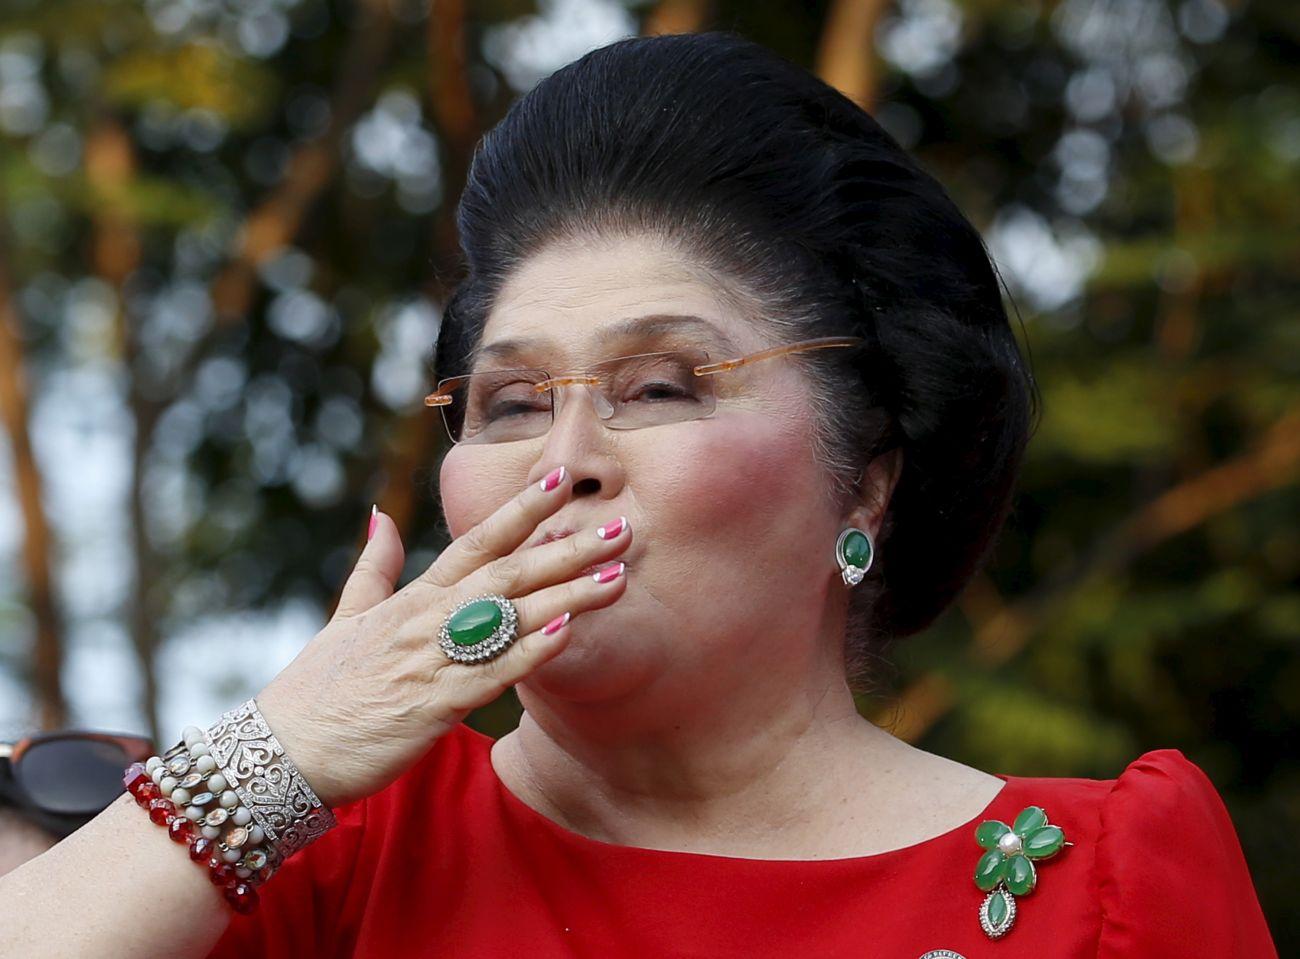 Imelda Marcos 2015 októberében fia egyik kampányrendezvényén dob puszit a közönségnek.